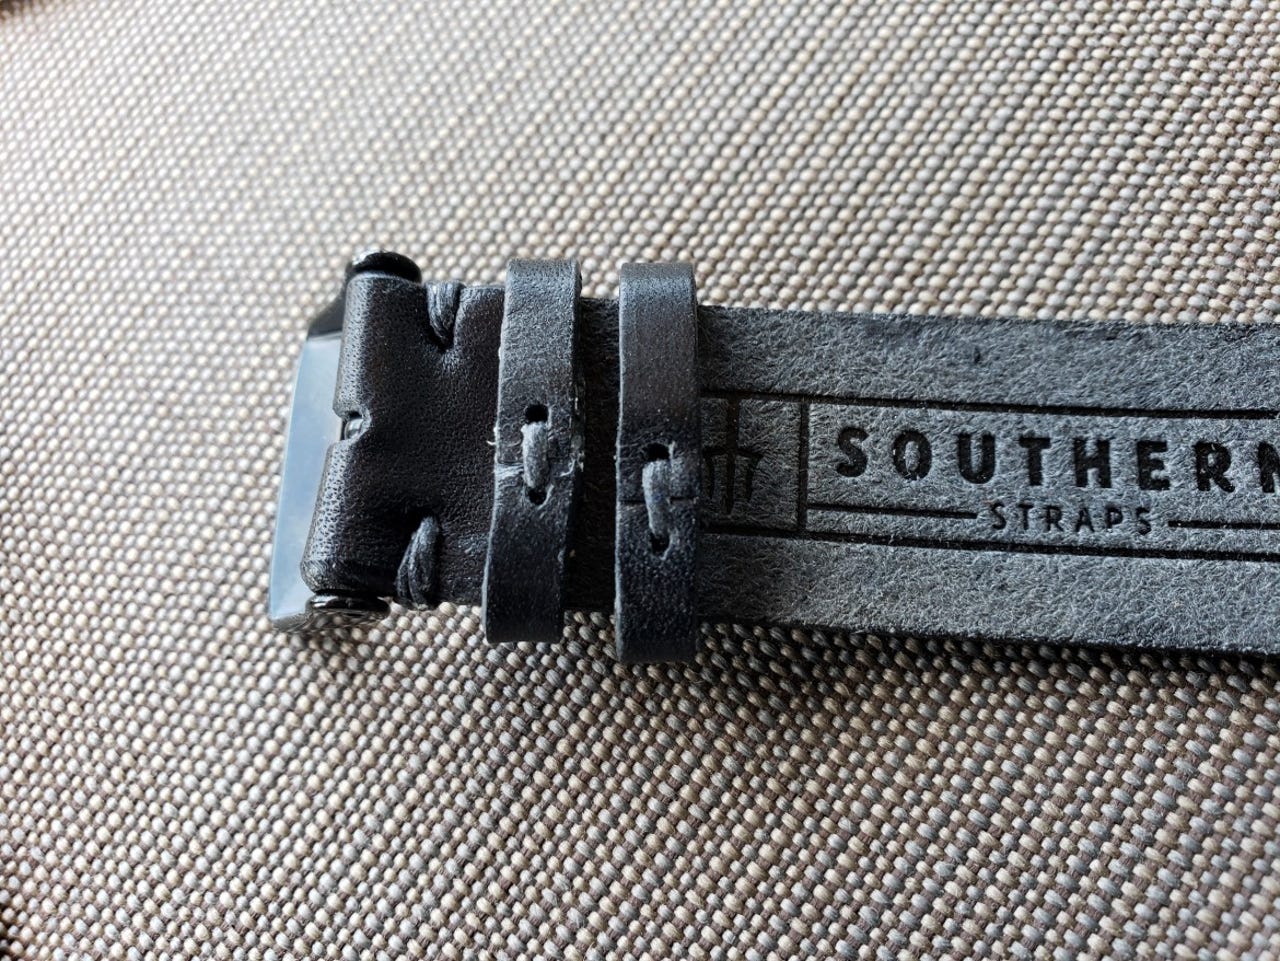 aw-southern-straps-4.jpg